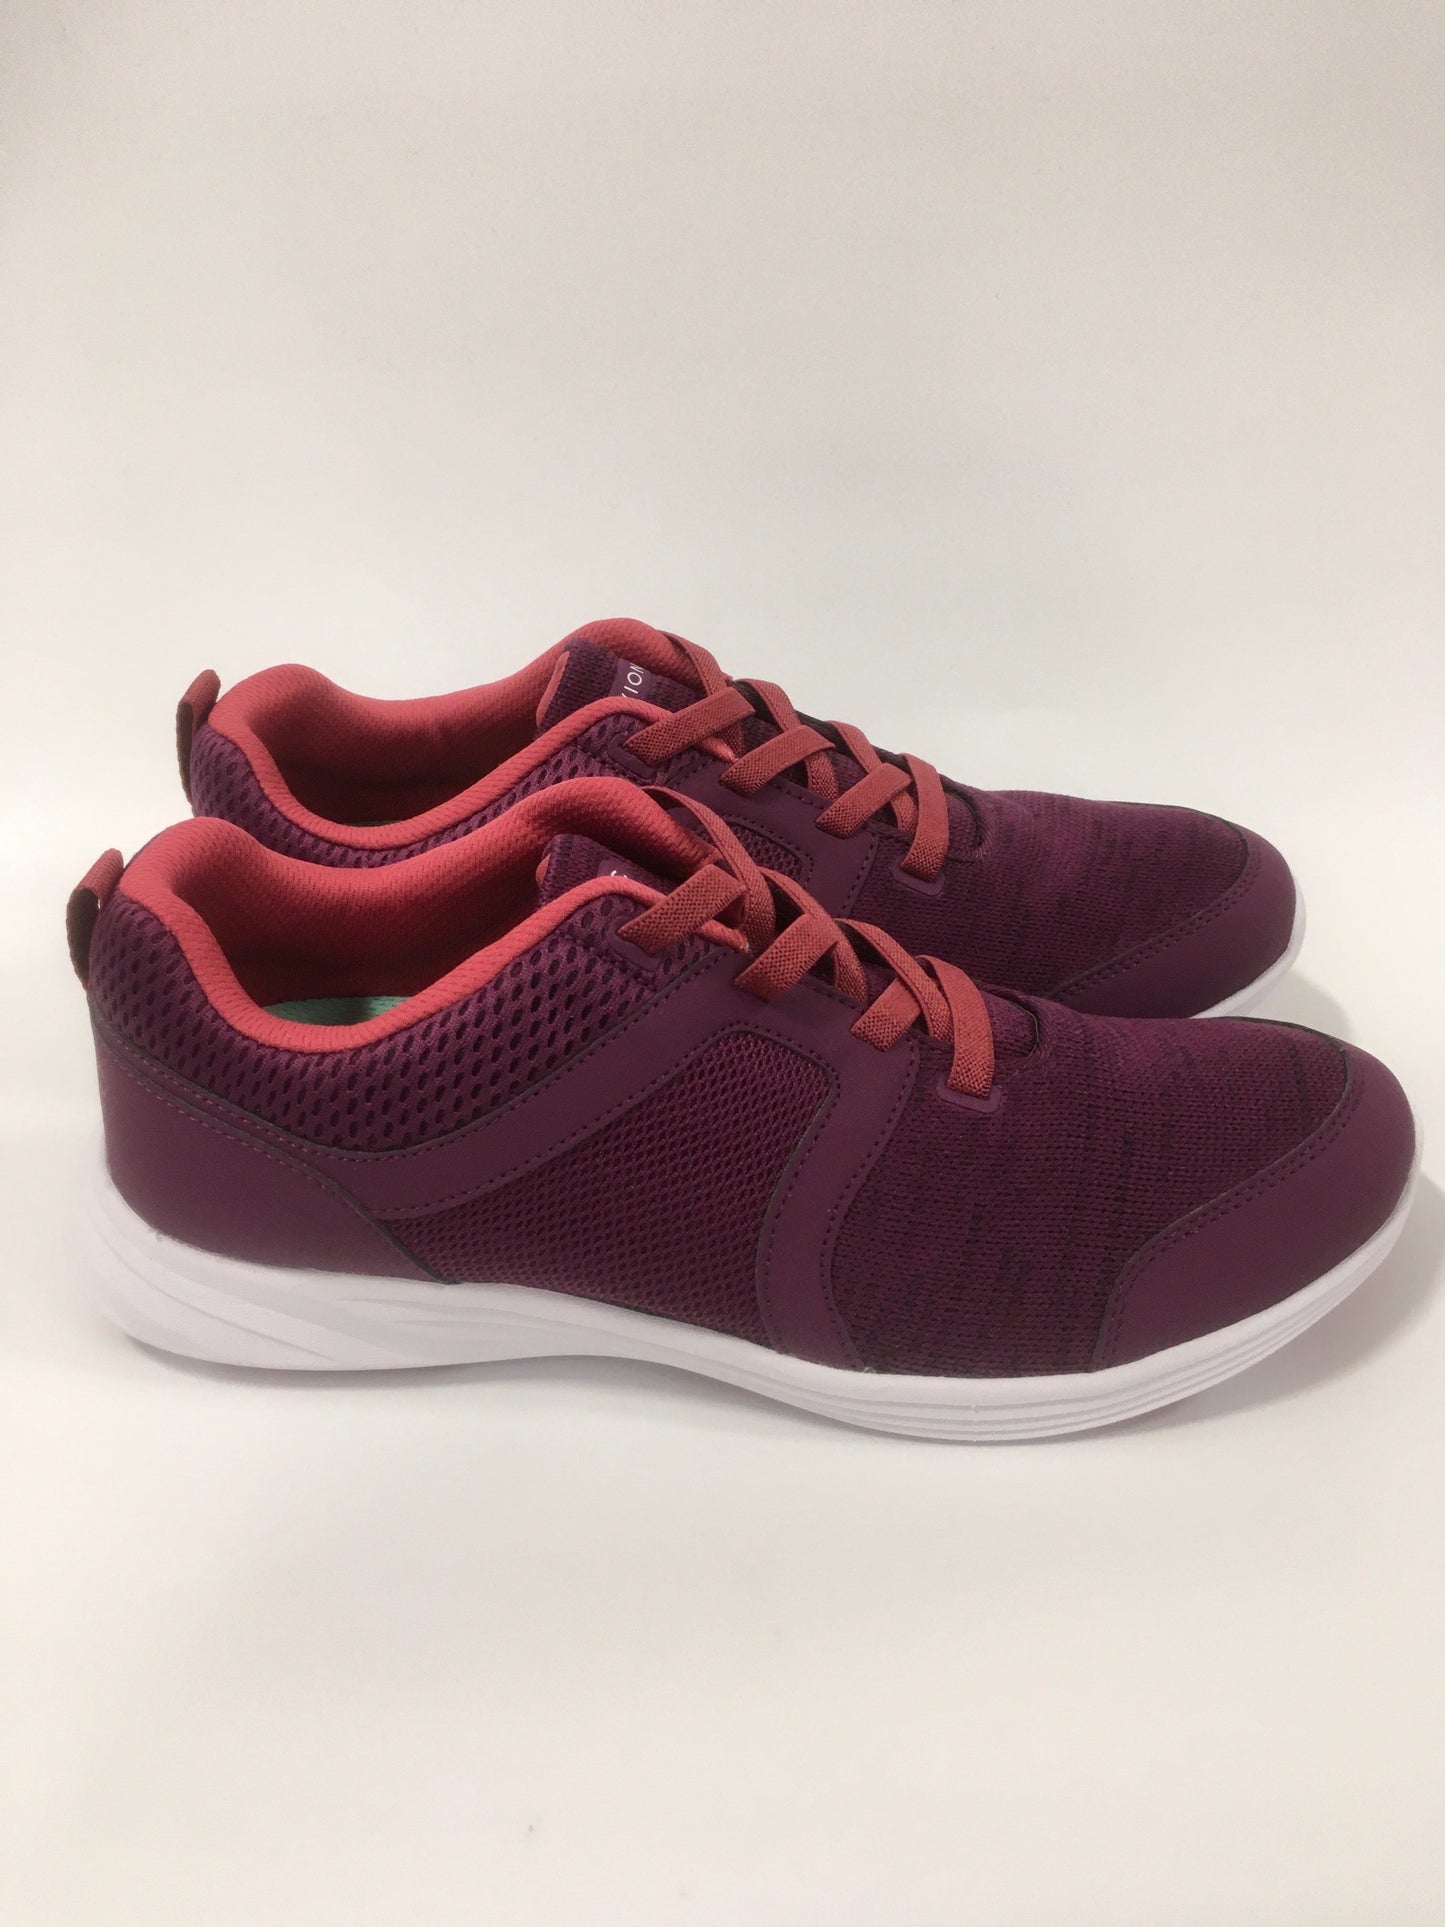 Purple Shoes Athletic Vionic, Size 10